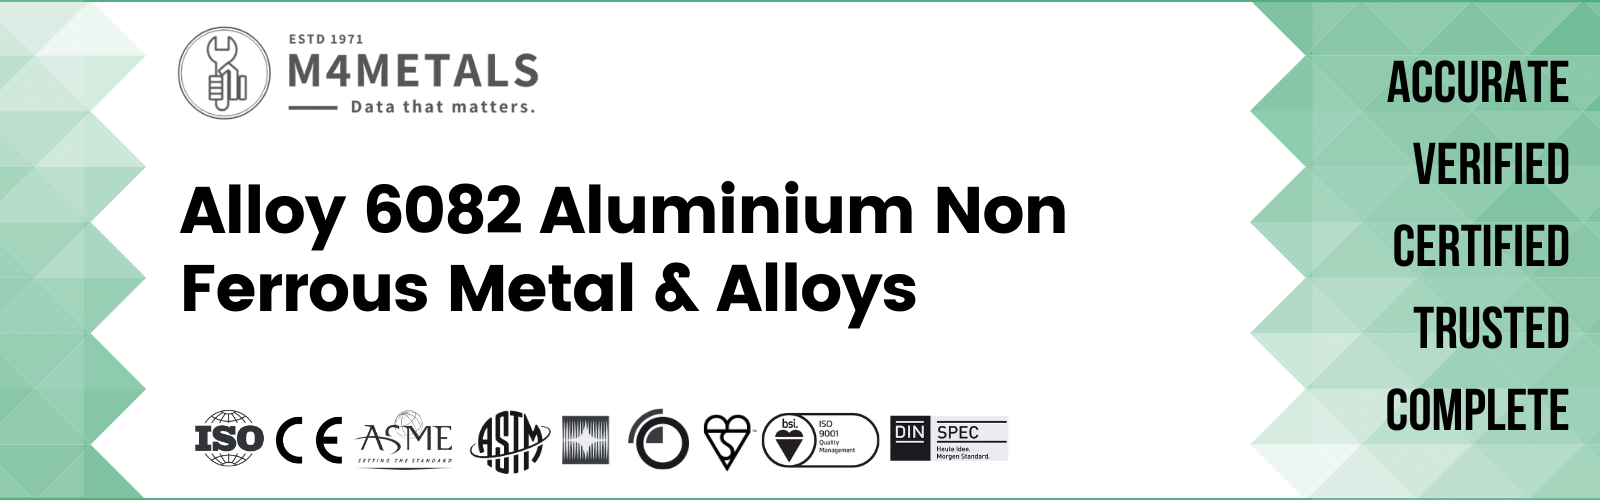 Aluminium Alloy 6082